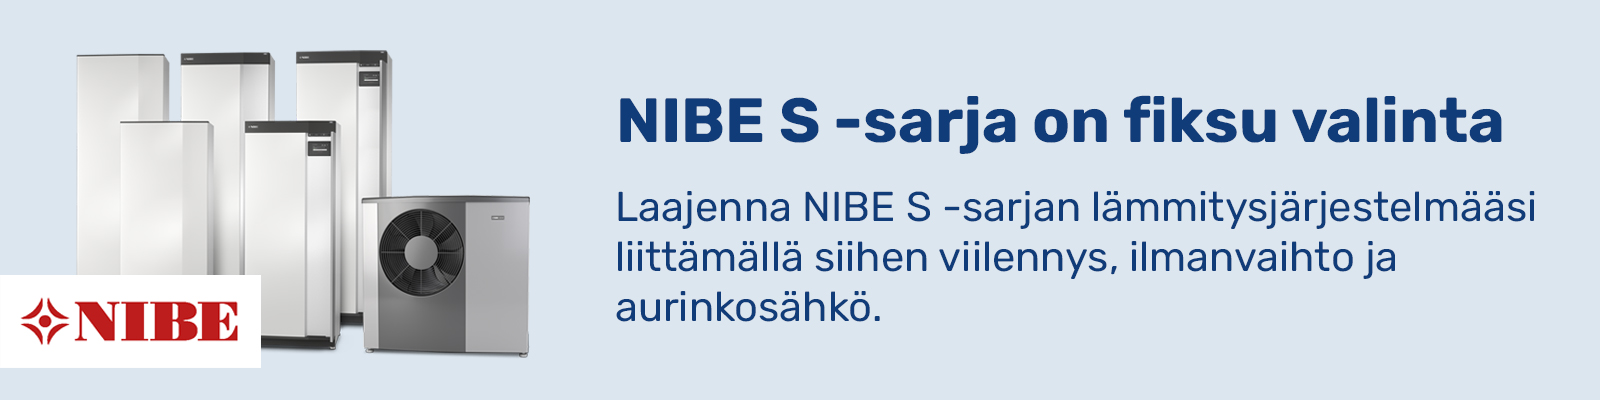 NIBE S -sarja banneri - tuotekuva